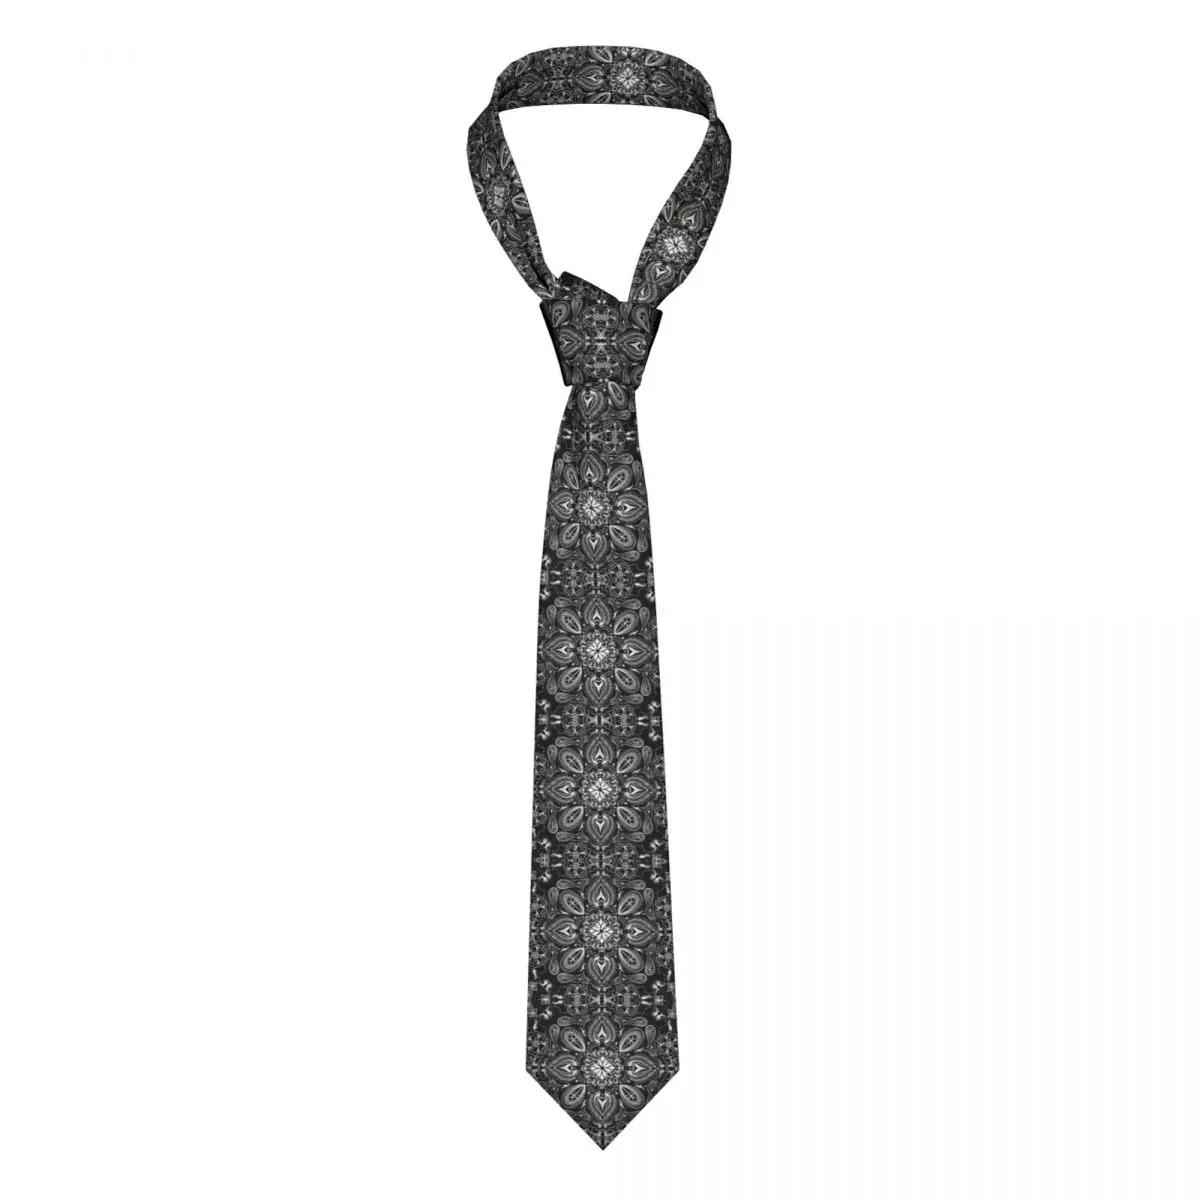 Класически Черни вратовръзки в стил кърпи, мъжки копринени вратовръзки, с петна пейсли по поръчка за офис костюм.